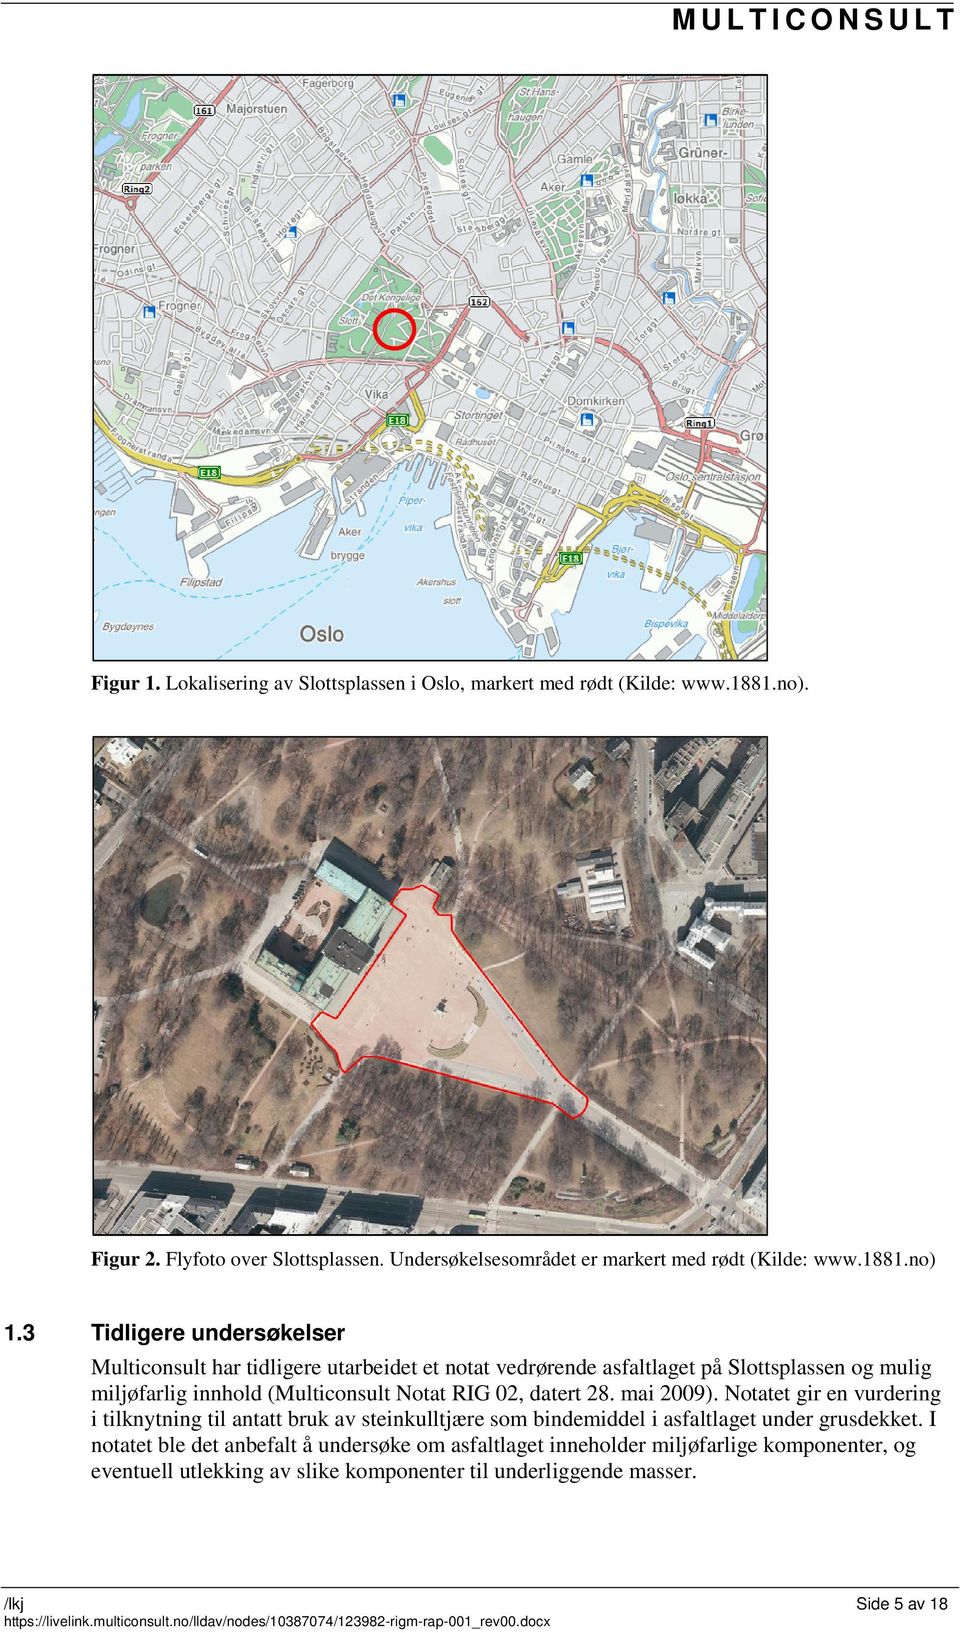 3 Tidligere undersøkelser Multiconsult har tidligere utarbeidet et notat vedrørende asfaltlaget på Slottsplassen og mulig miljøfarlig innhold (Multiconsult Notat RIG 02, datert 28. mai 2009).